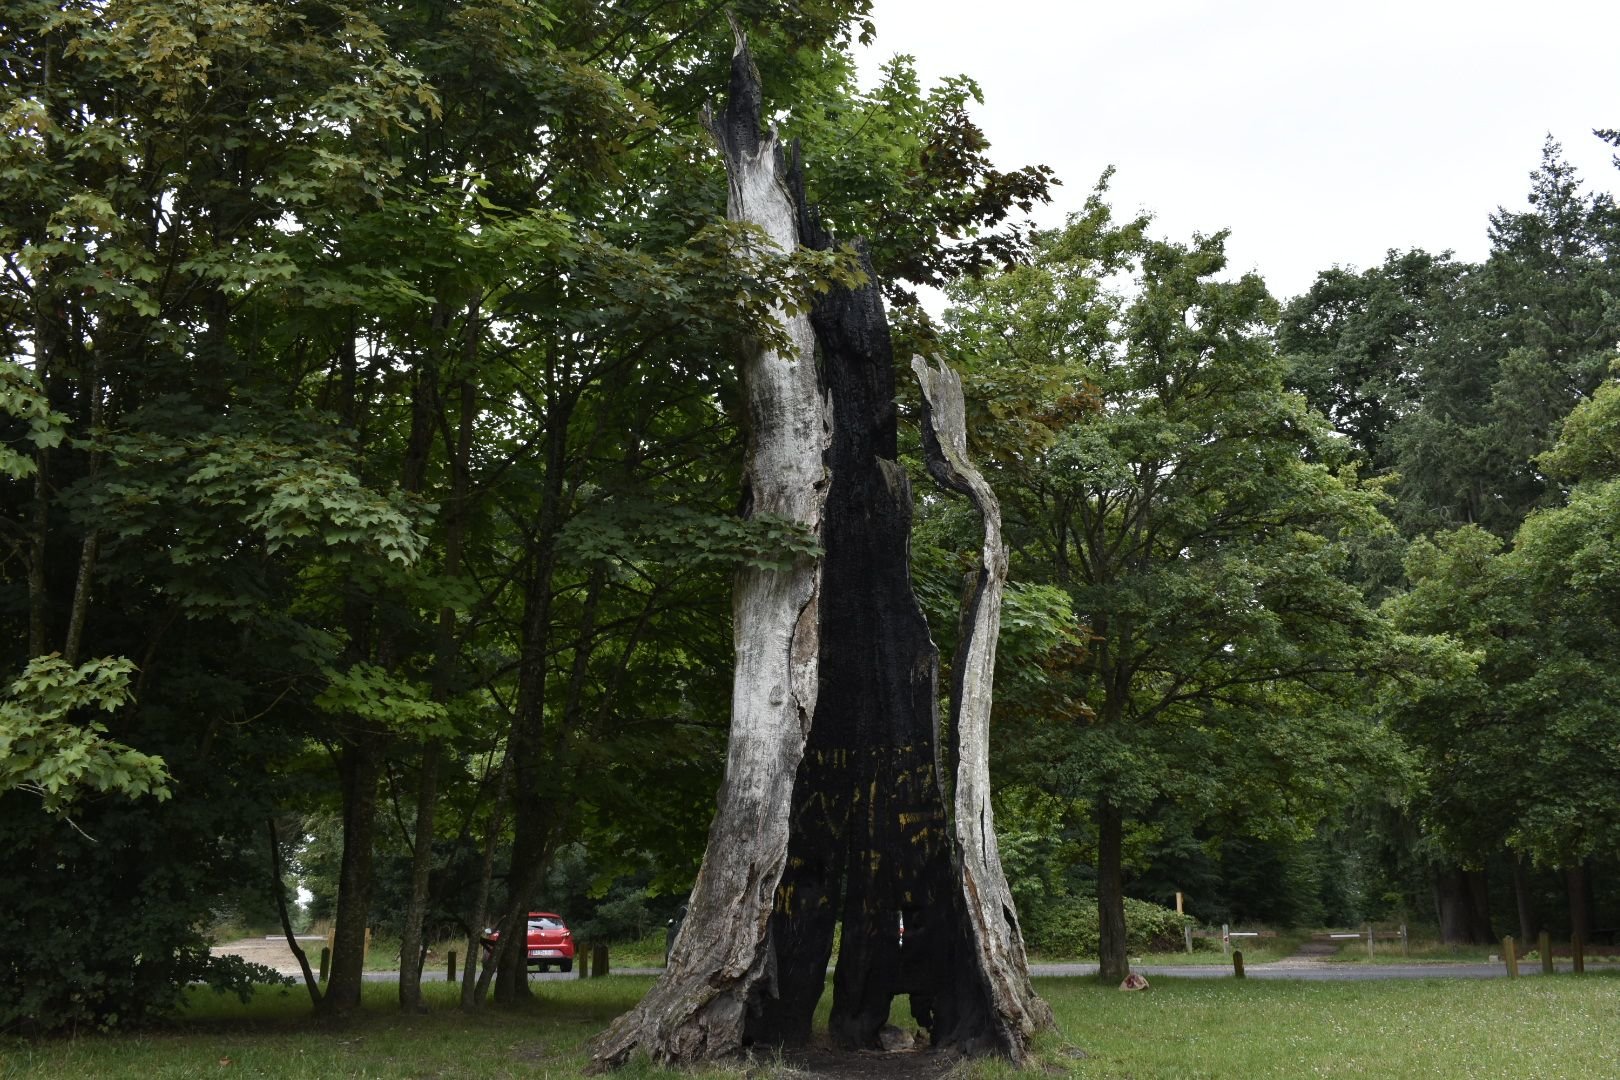 25 juin 2022, Draveil. Aux abords de la forêt de Sénart, le chêne d'Antin autrefois l'un des points de repères les plus connus de la ville n'est plus qu'une carcasse vide. LP/William Minh Hao Nguyen